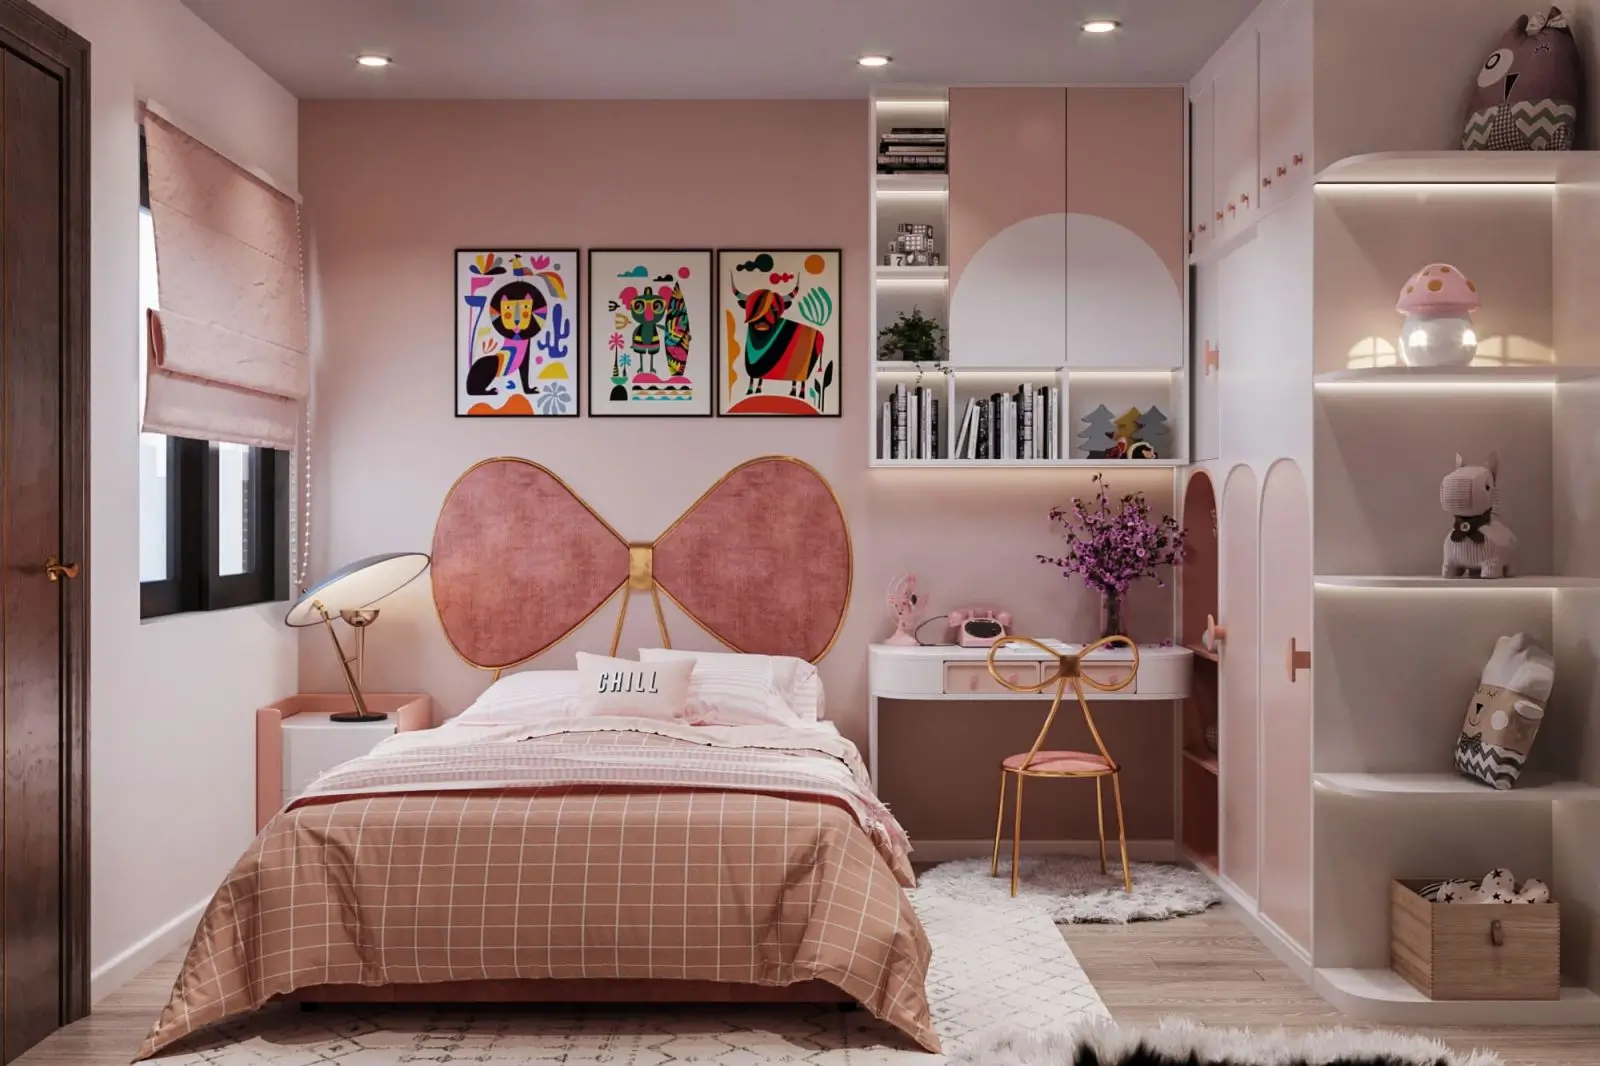 Mẫu phòng ngủ nhỏ cho nữ được trang trí theo tone hồng dịu dàng